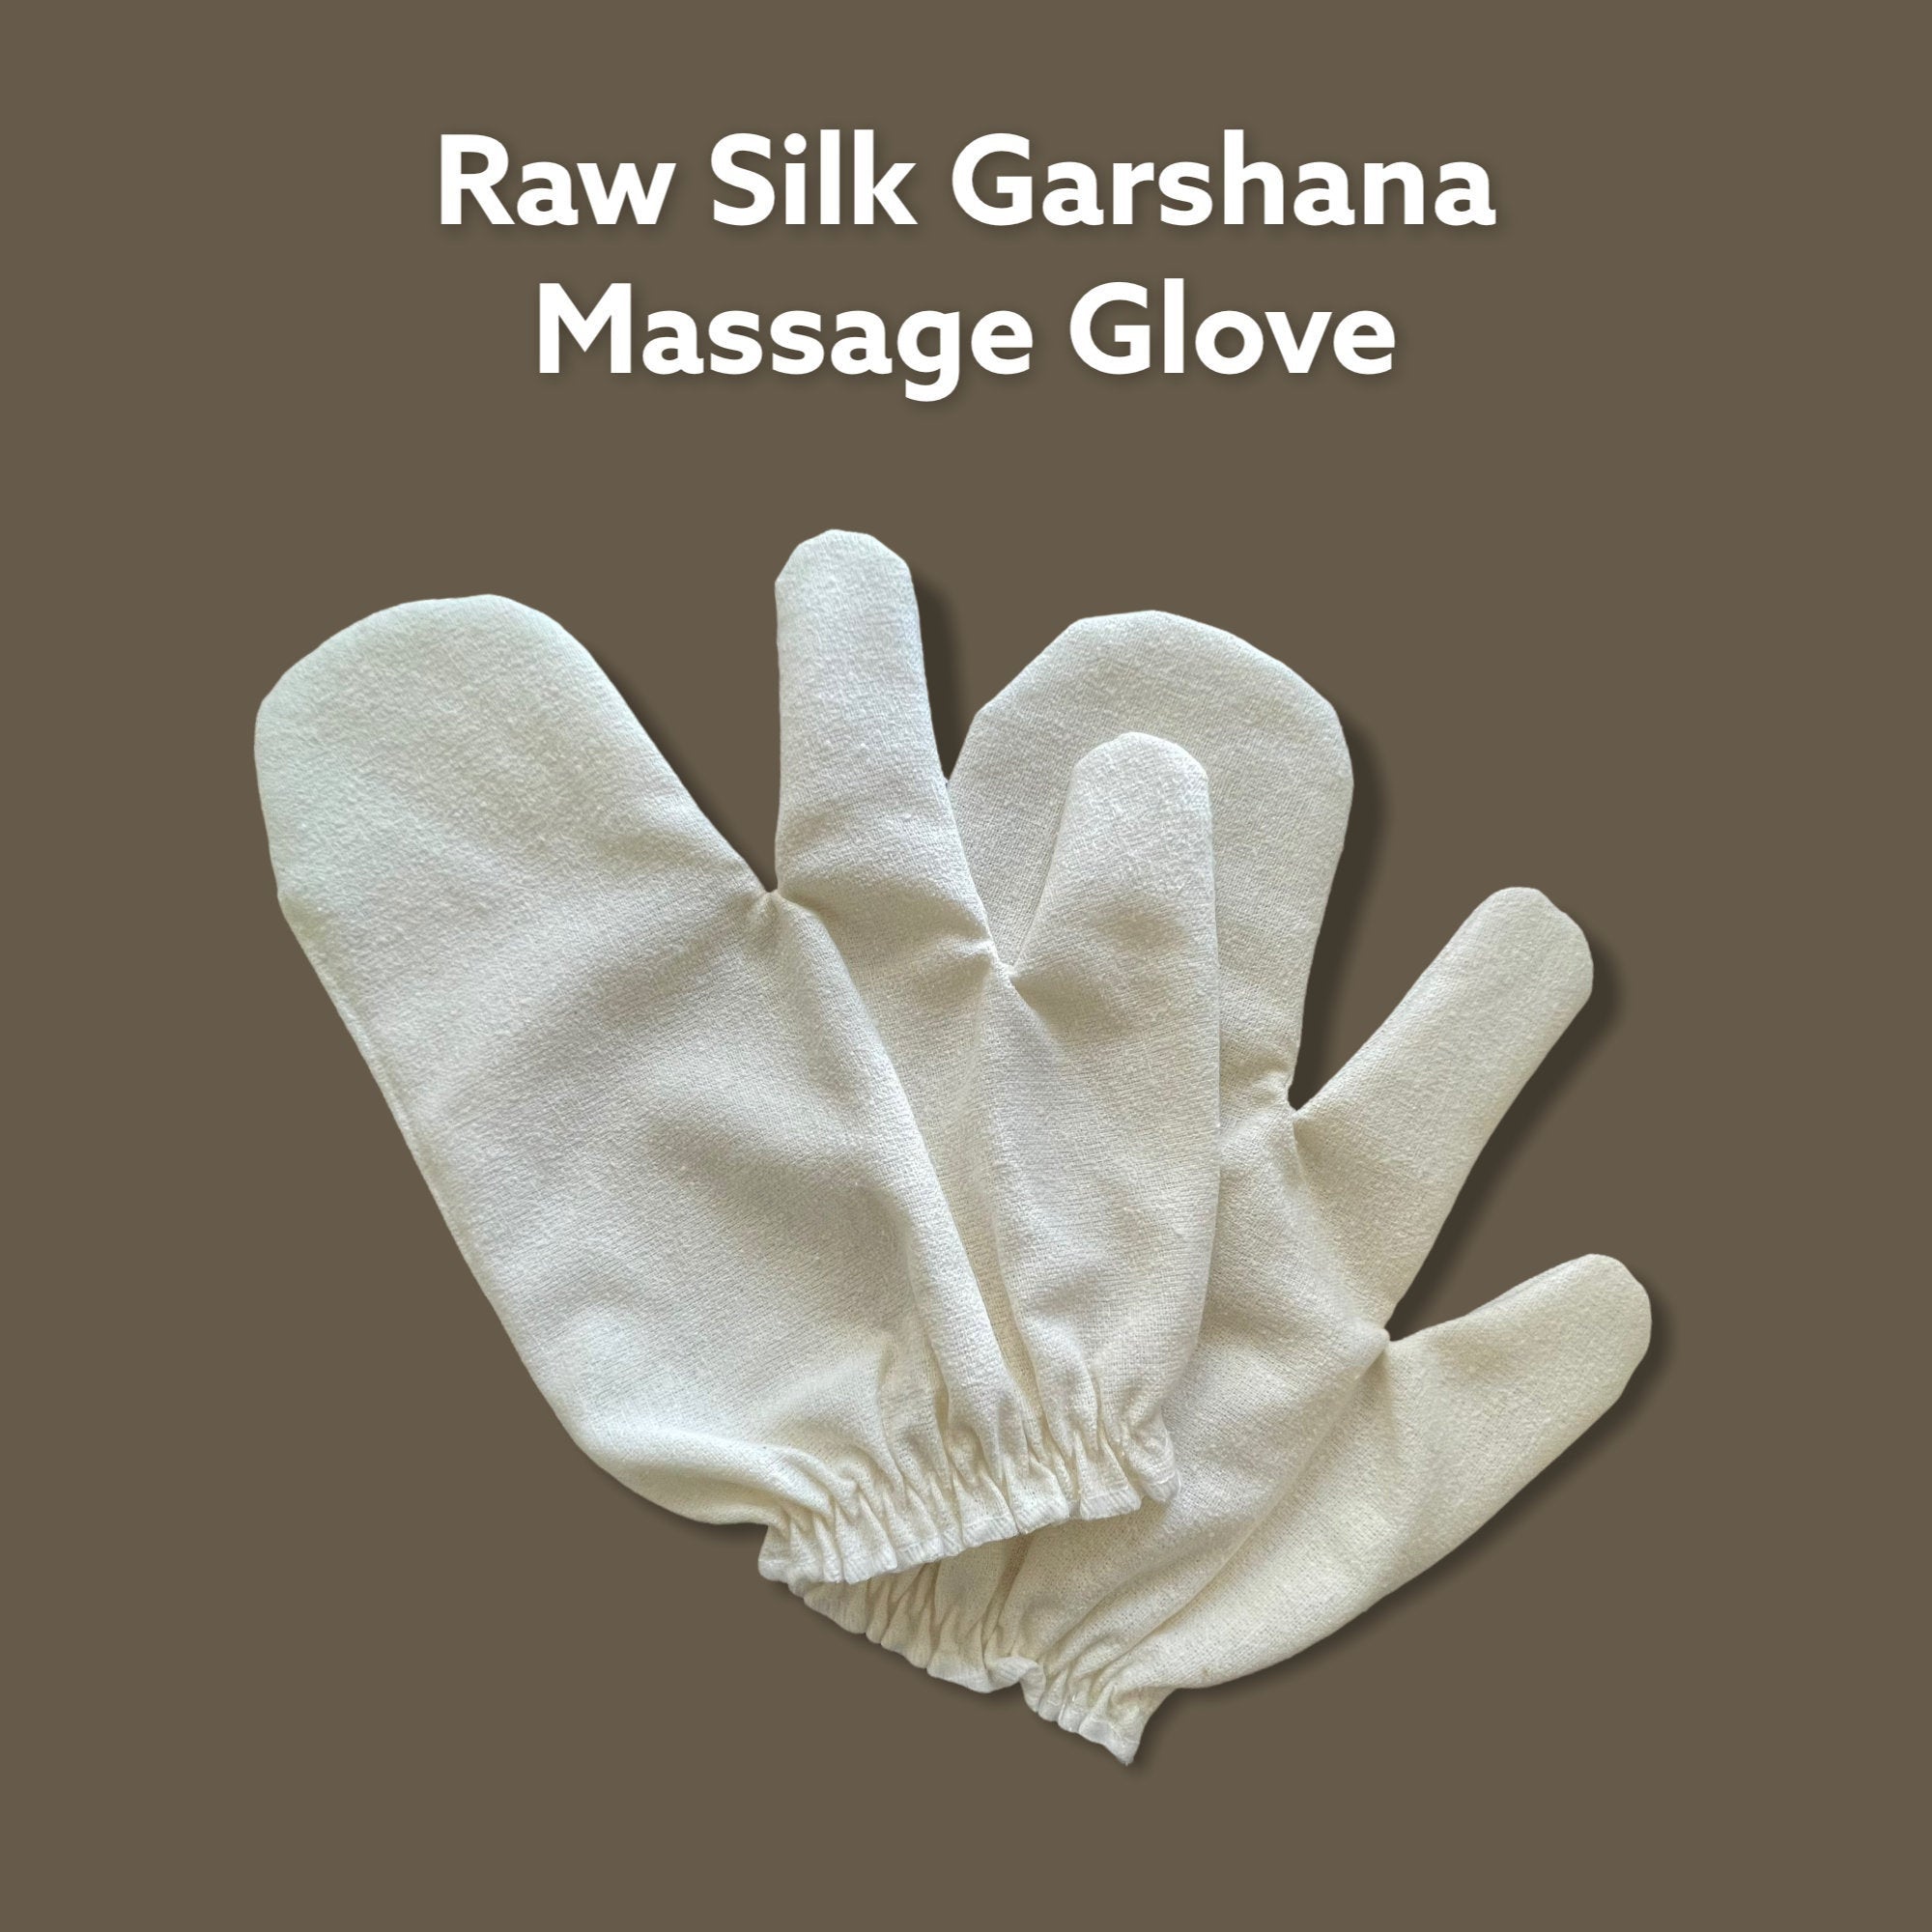 100% Raw Silk Garshana Glove, Pre-/Shower Mitt, Gentle Exfoliating Bath Gloves, Raw Silk Massage Gloves